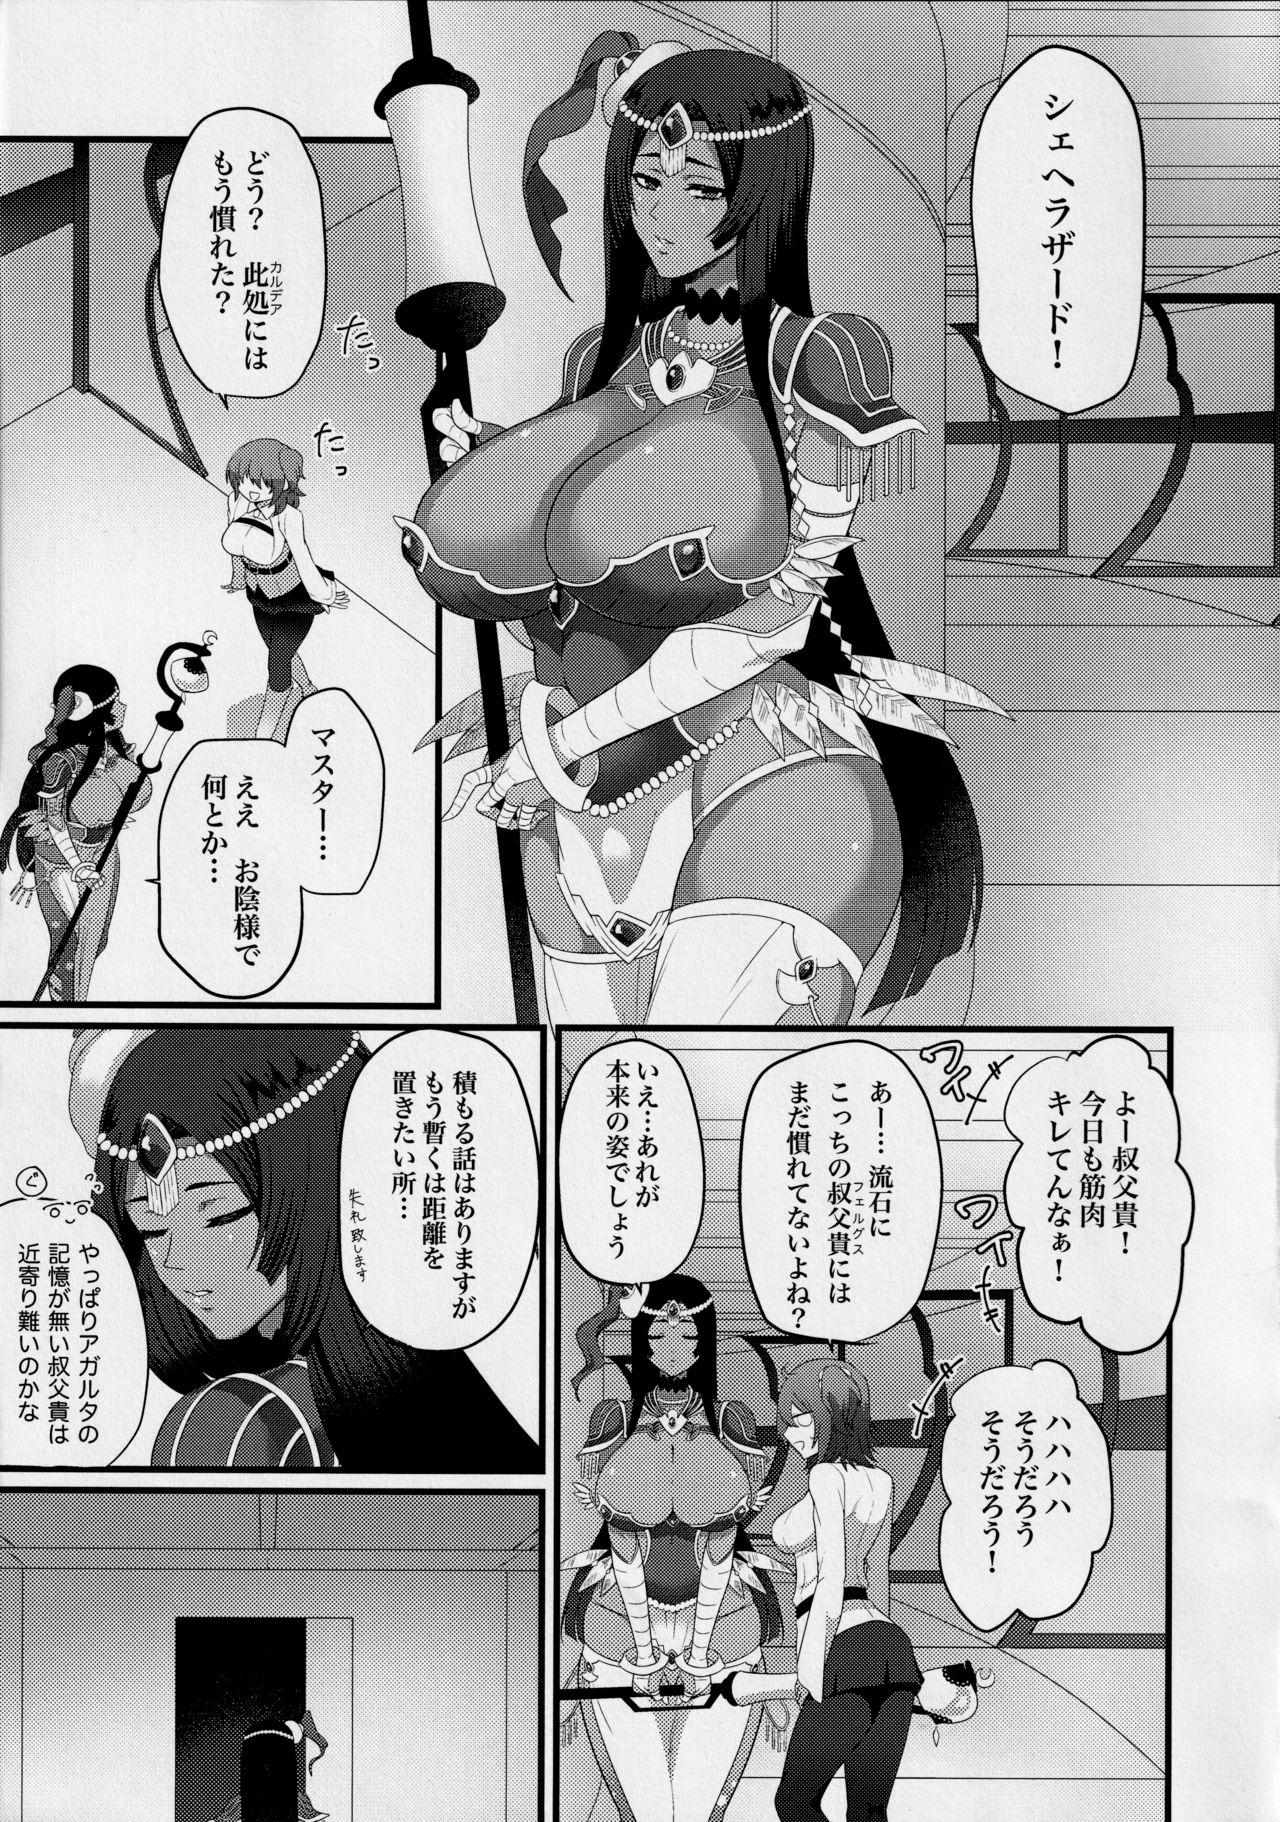 Spanking Sono Kugutsu wa Kataribe no Hitoku ni Tsuki - Fate grand order Pounding - Page 3